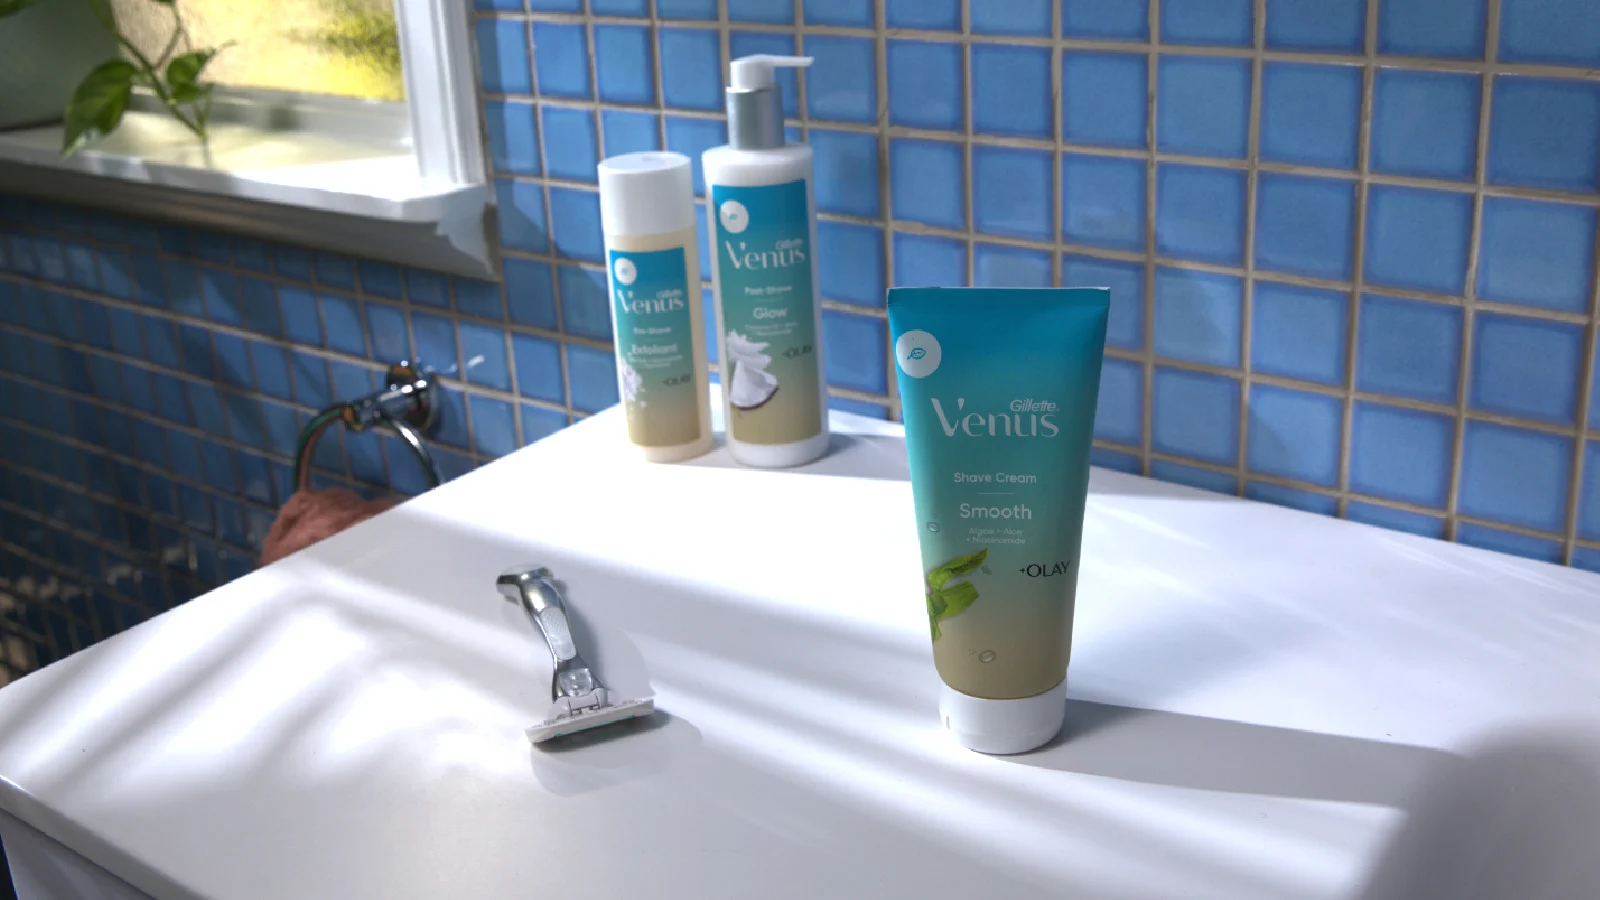 Venus Gesichtspflegeprodukte im Badezimmer